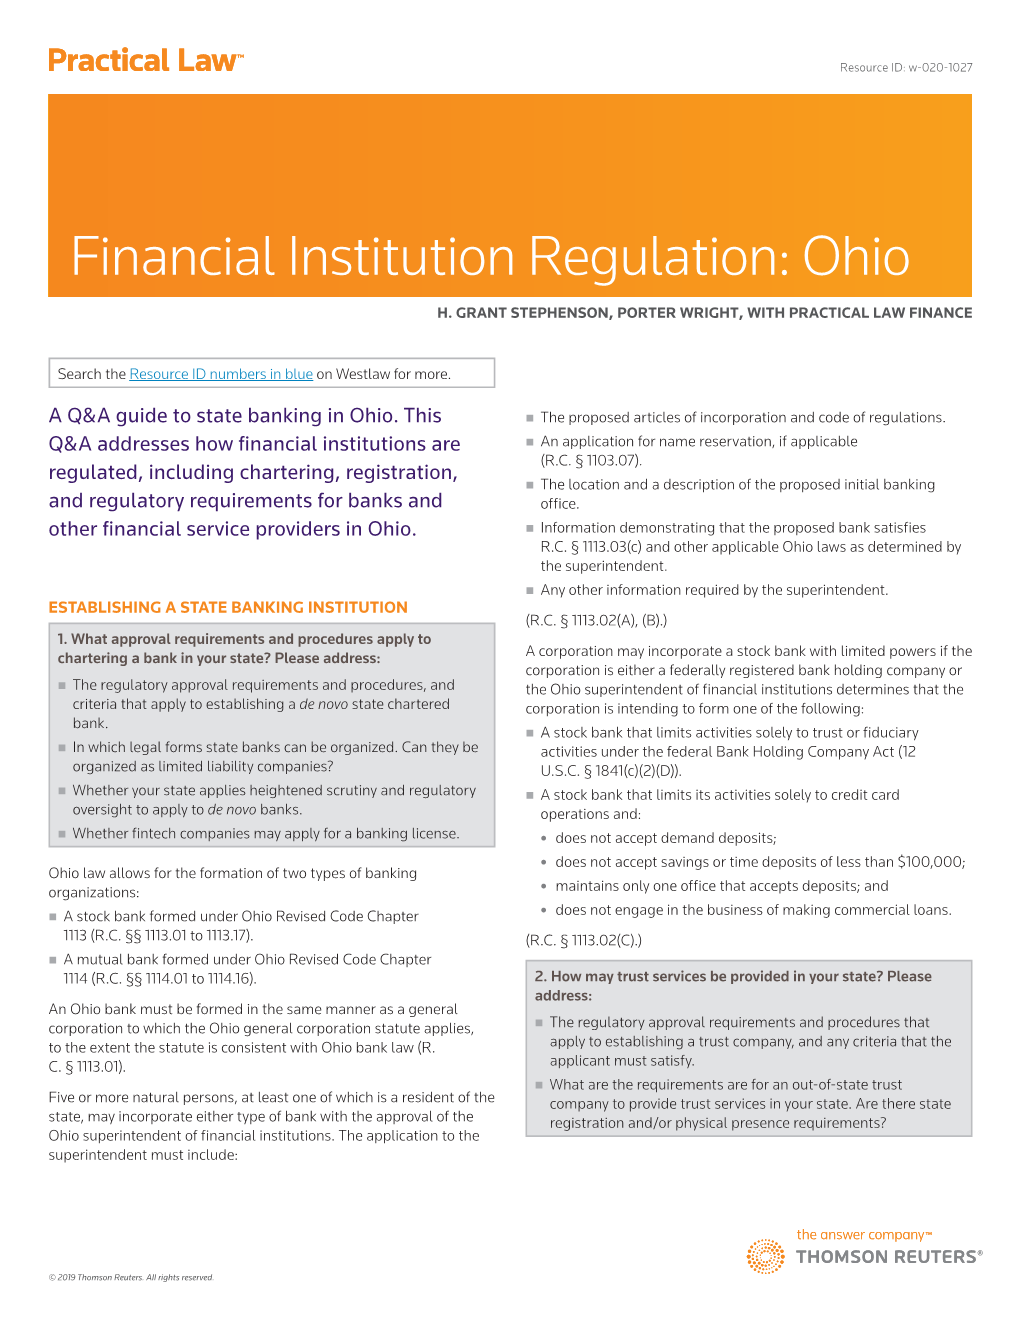 Financial Institution Regulation: Ohio